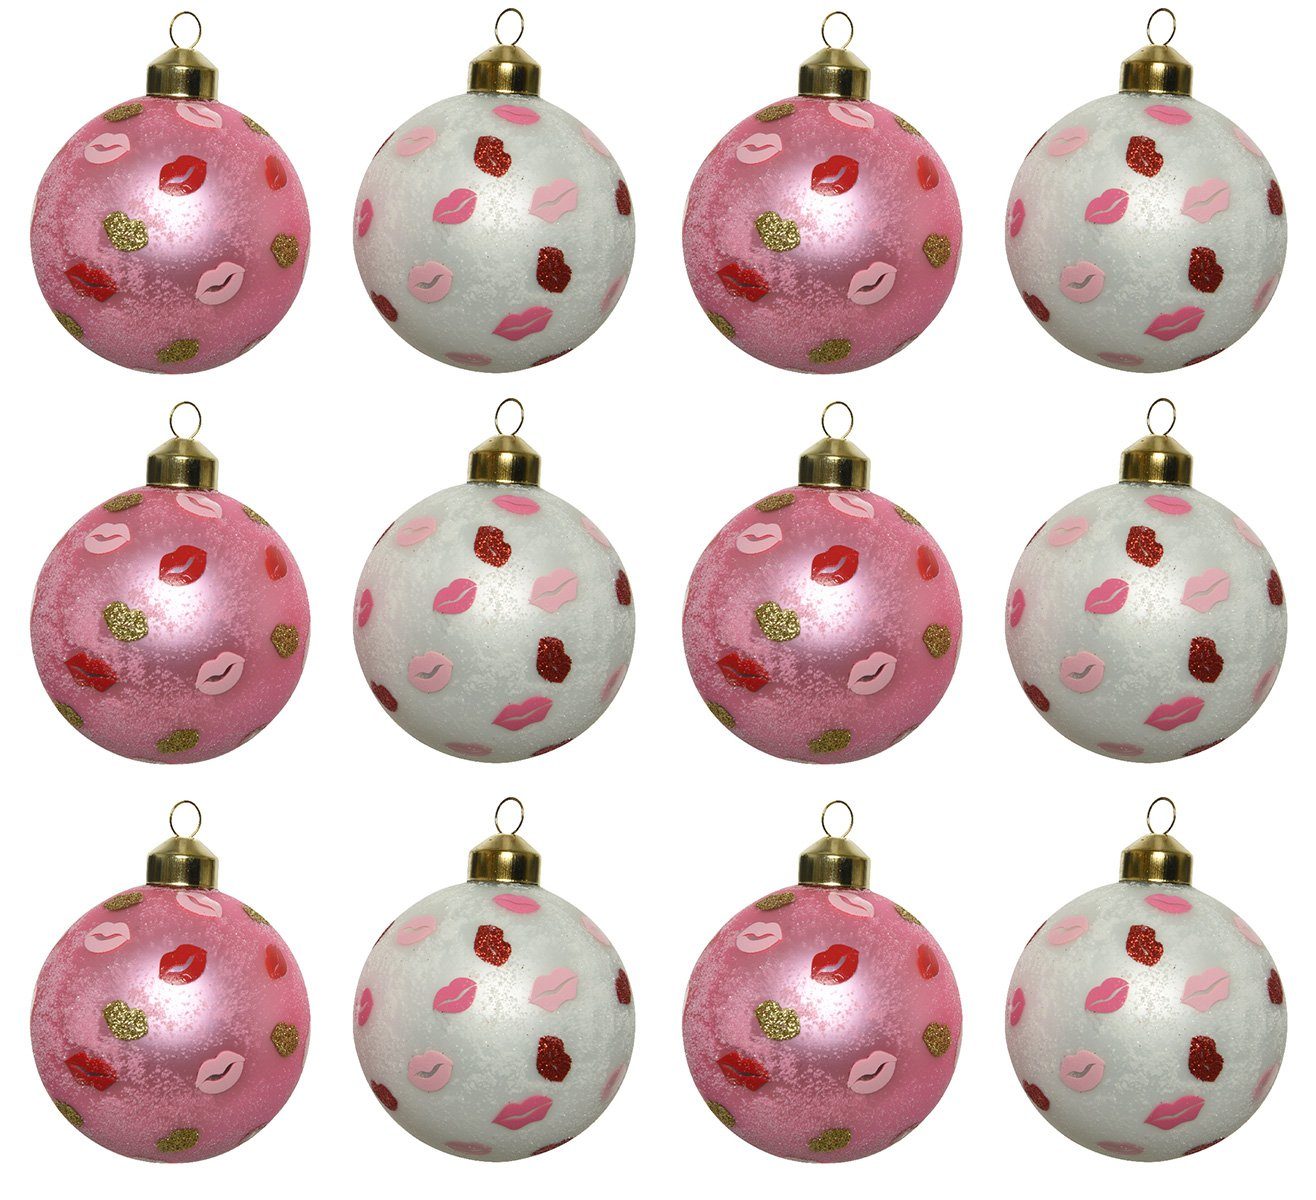 Decoris season decorations Weihnachtsbaumkugel, 8cm Glas / Weihnachtskugeln pink 12er Set weiß Lippen